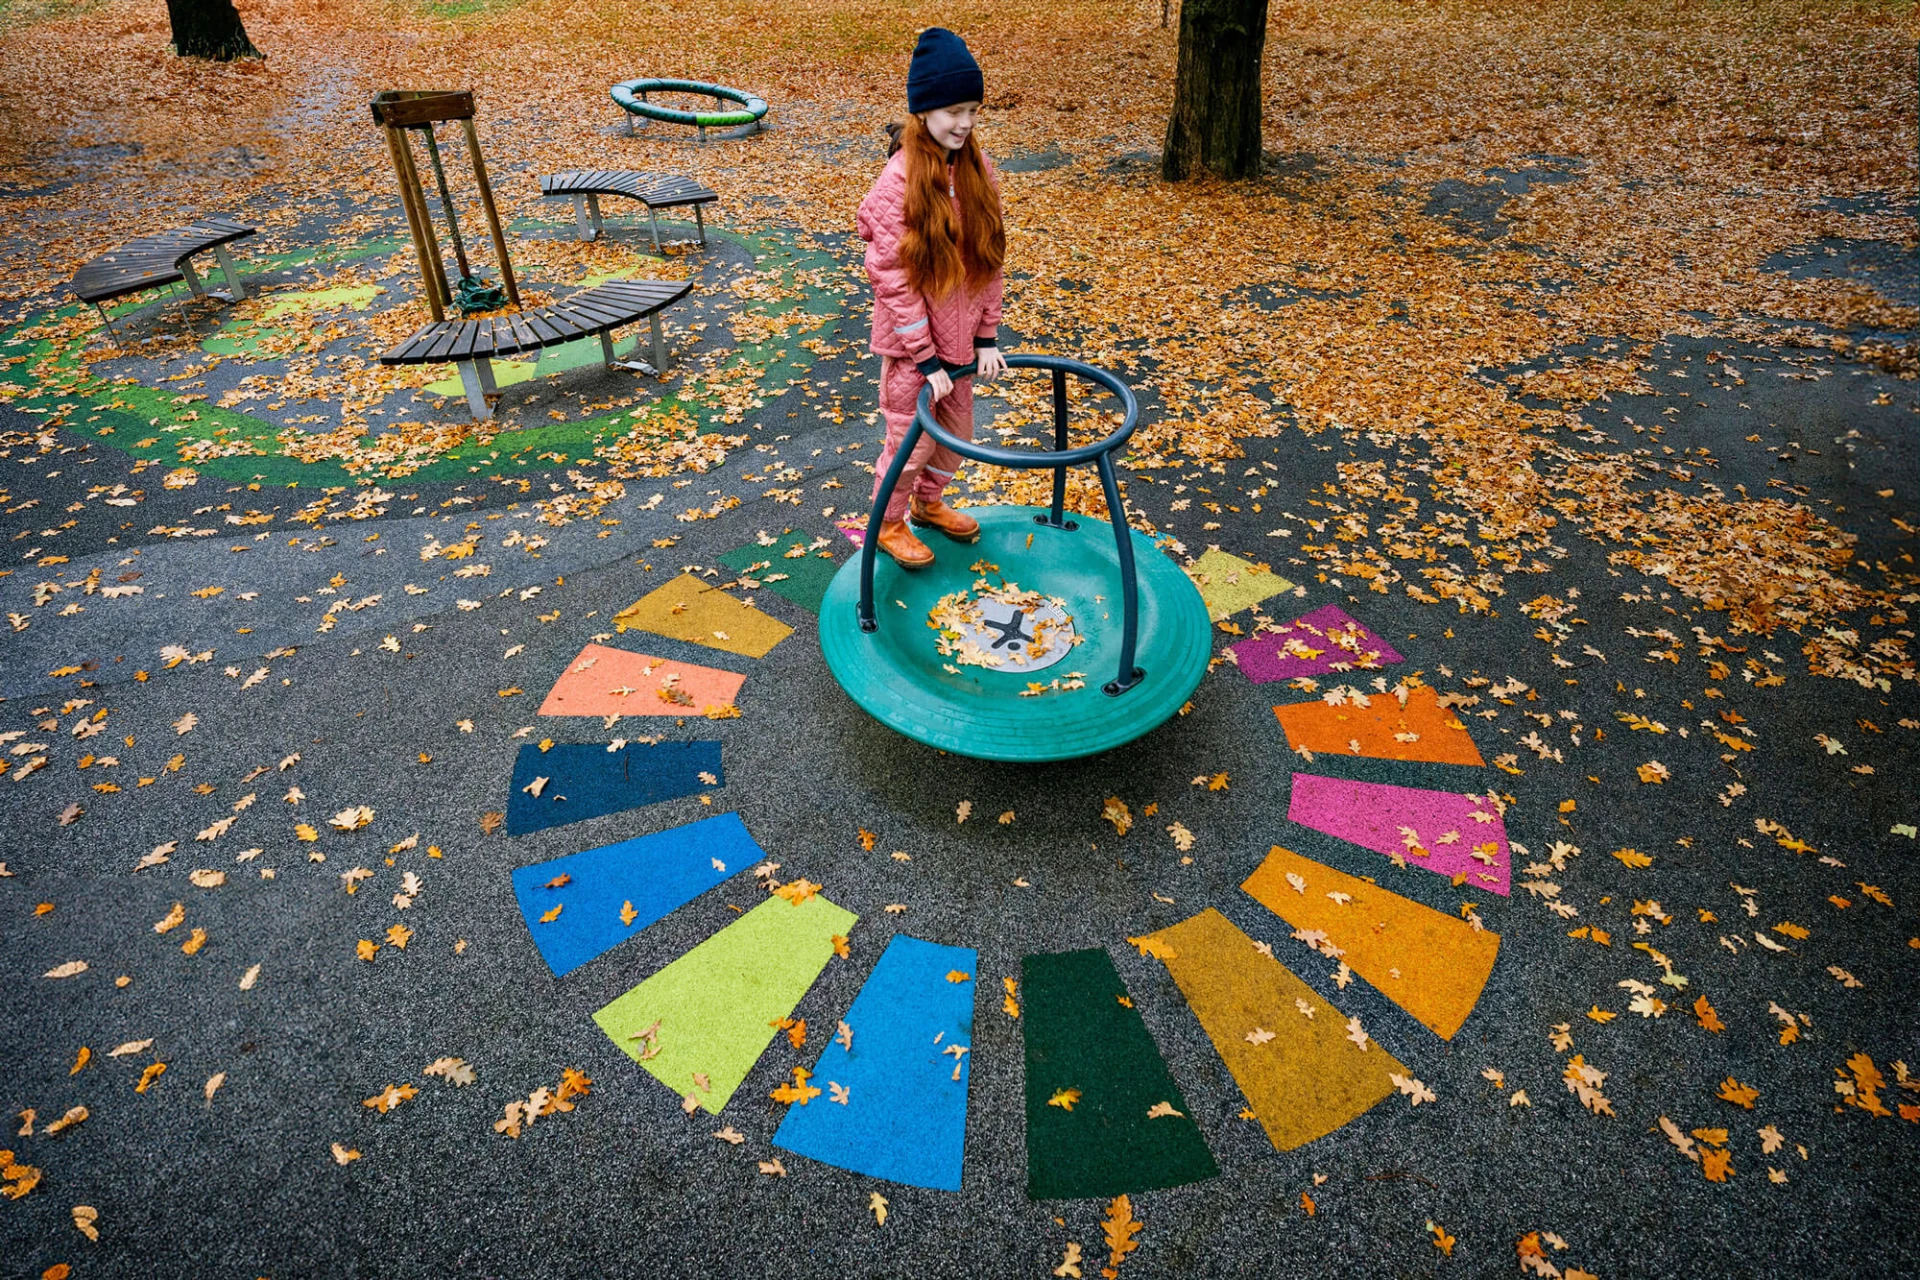 Fille jouant sur une aire de jeux avec un revêtement coloré